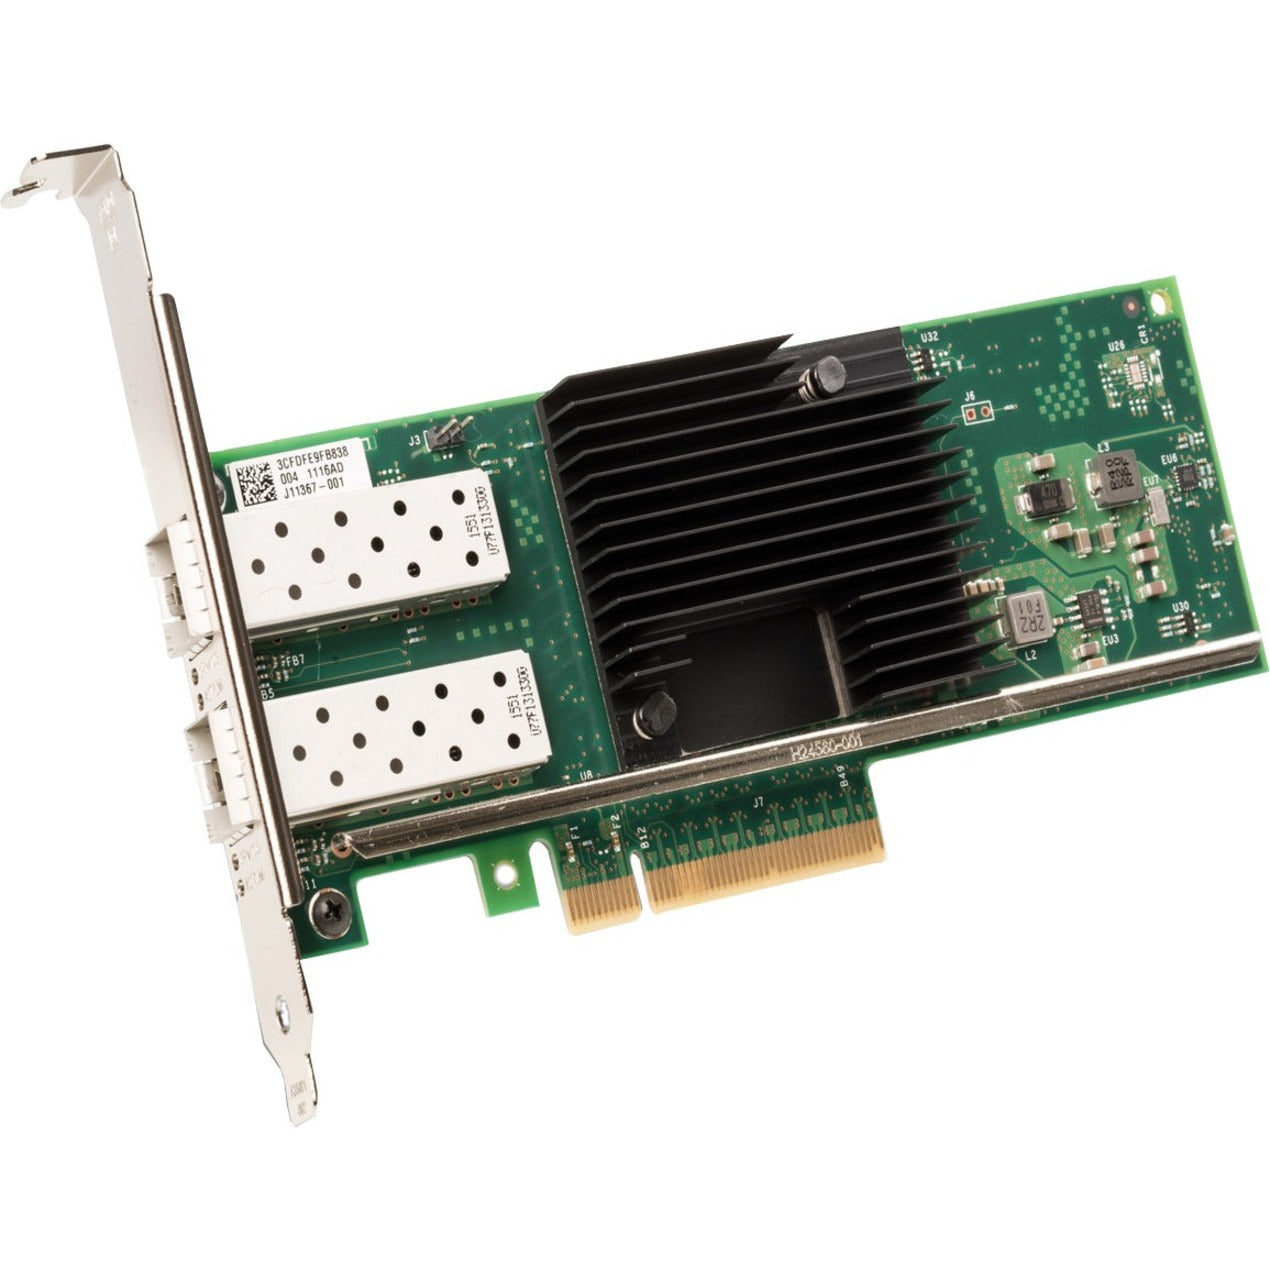 لينوفو 4XC7A79699 ThinkSystem إنتل X710-T4L 10 جيجا بايت-T 4-منفذ PCIe بطاقة الإيثرنت، بطاقة إيثرنت بسرعة 10 جيجابت  ماركة: لينوفو